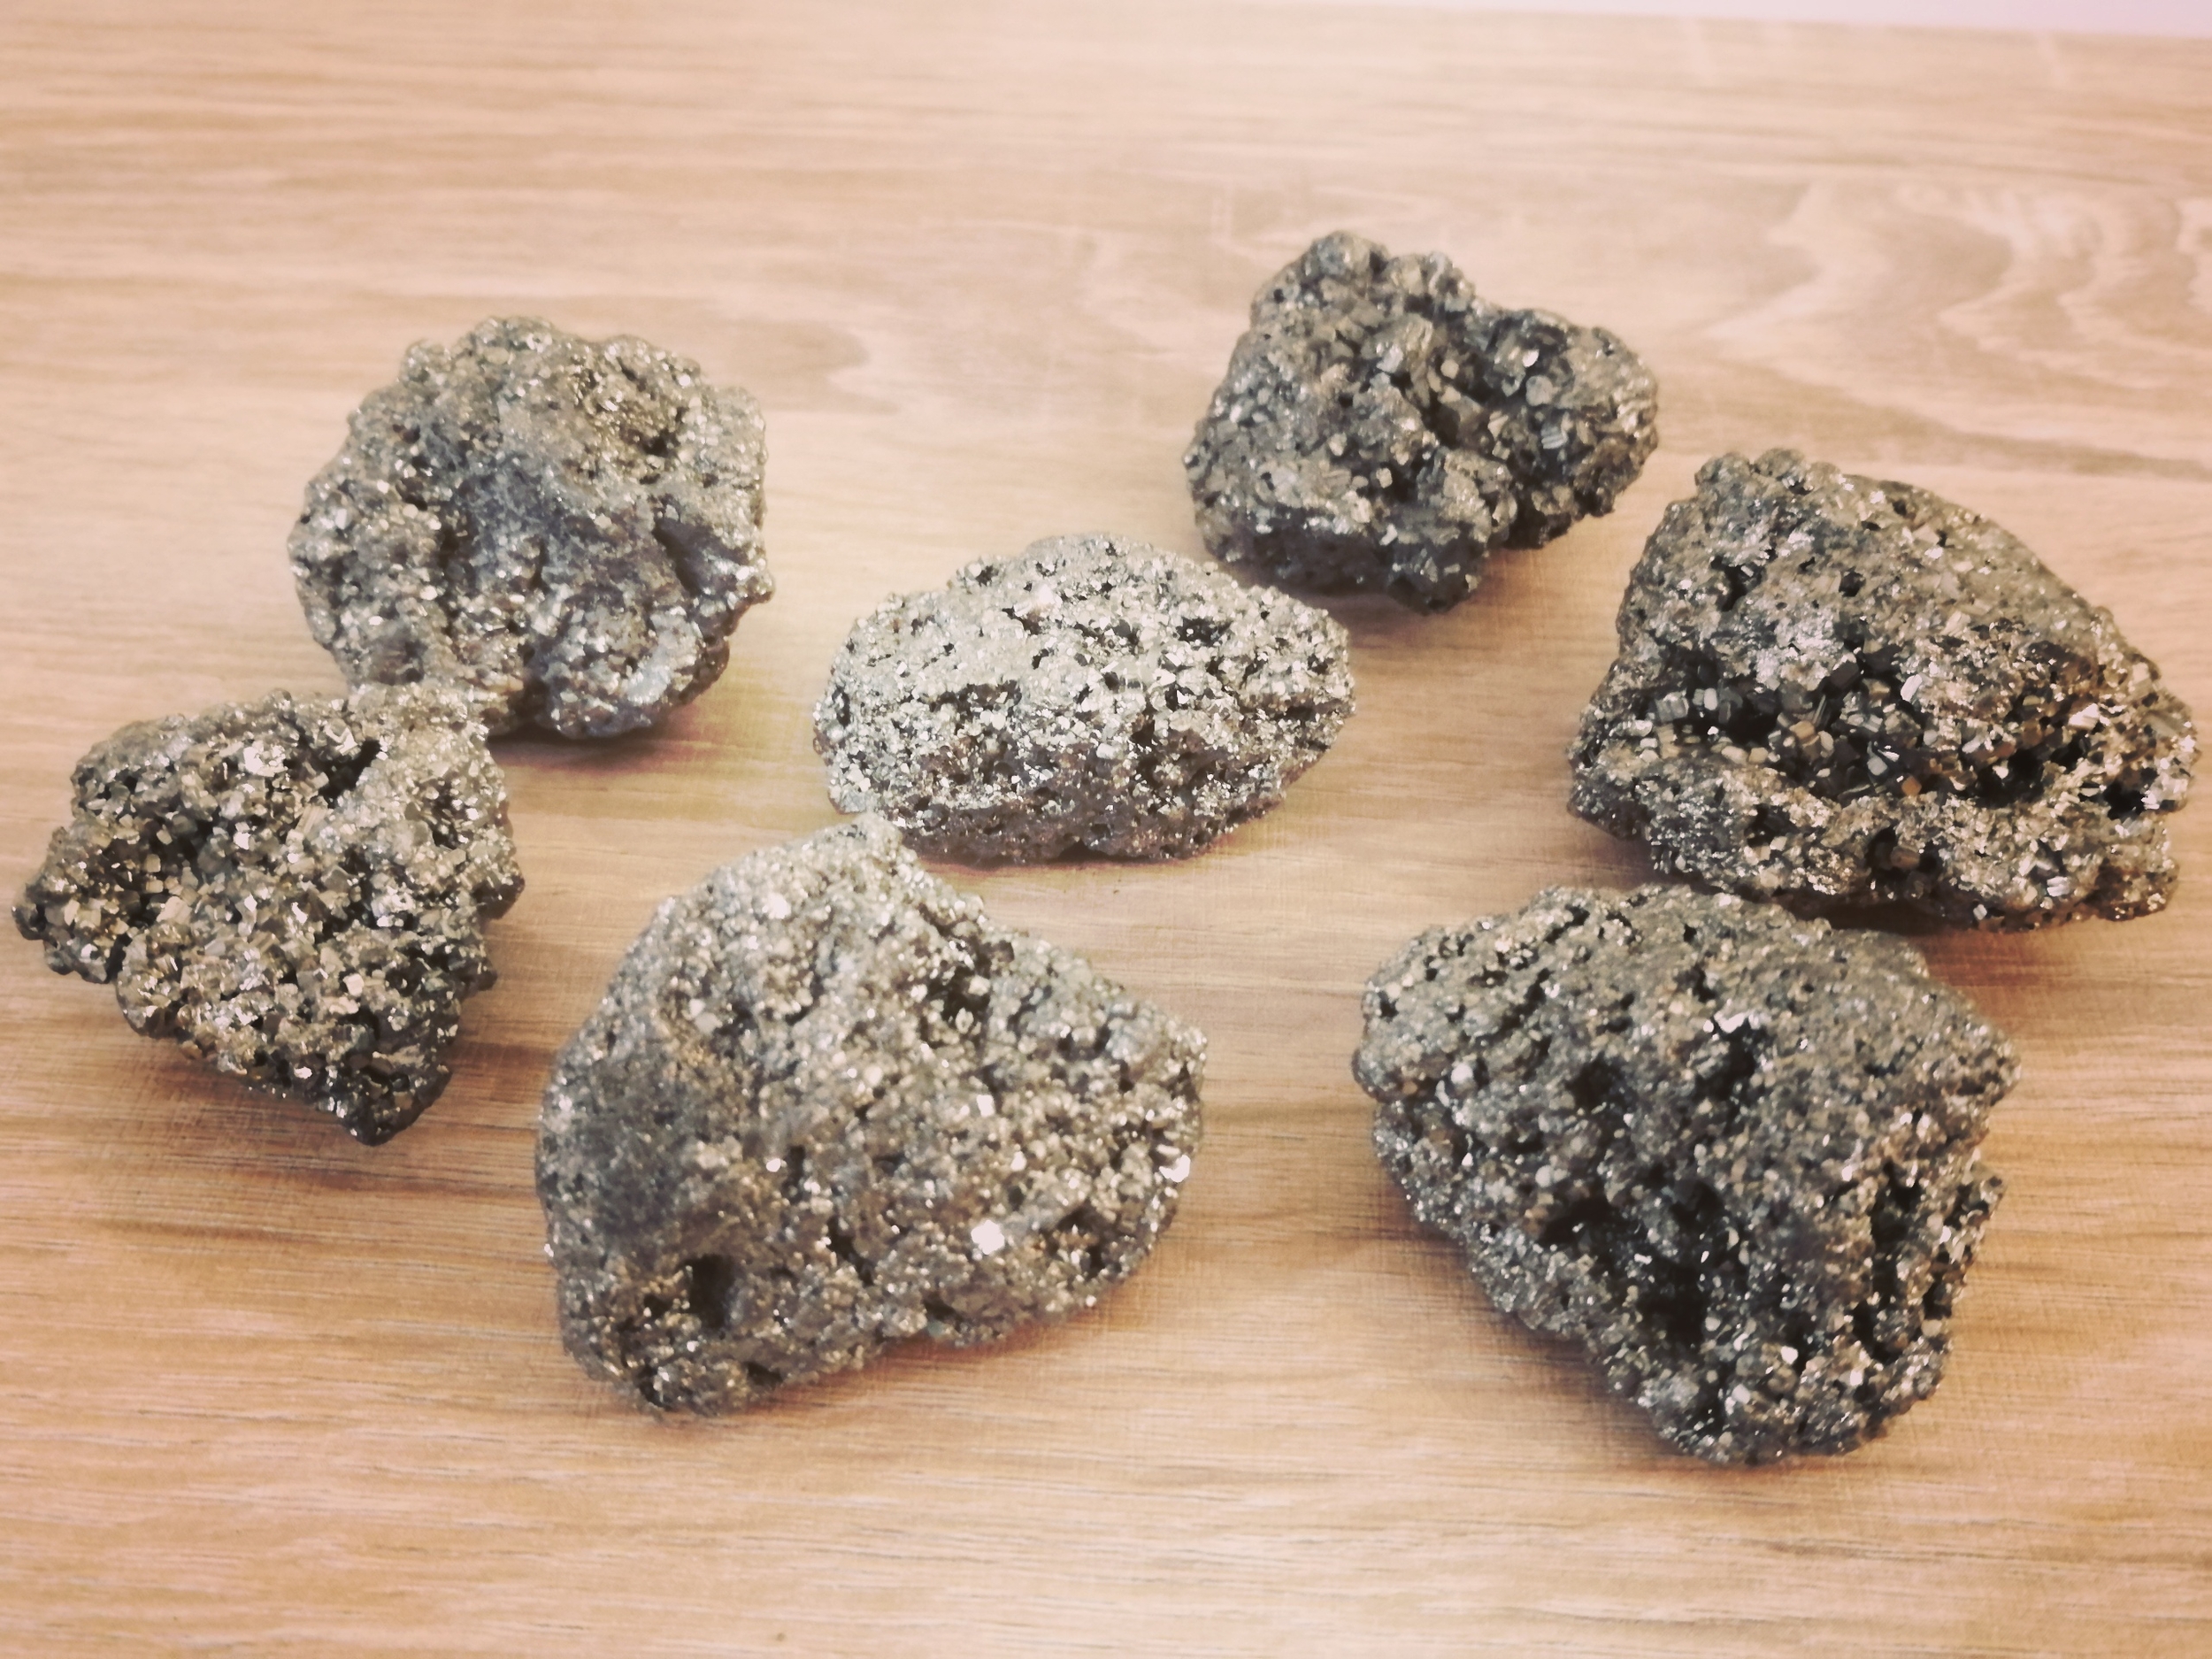 pyrite-pierre-brute-lithotherapie-herboristerie-bienfait-mineraux